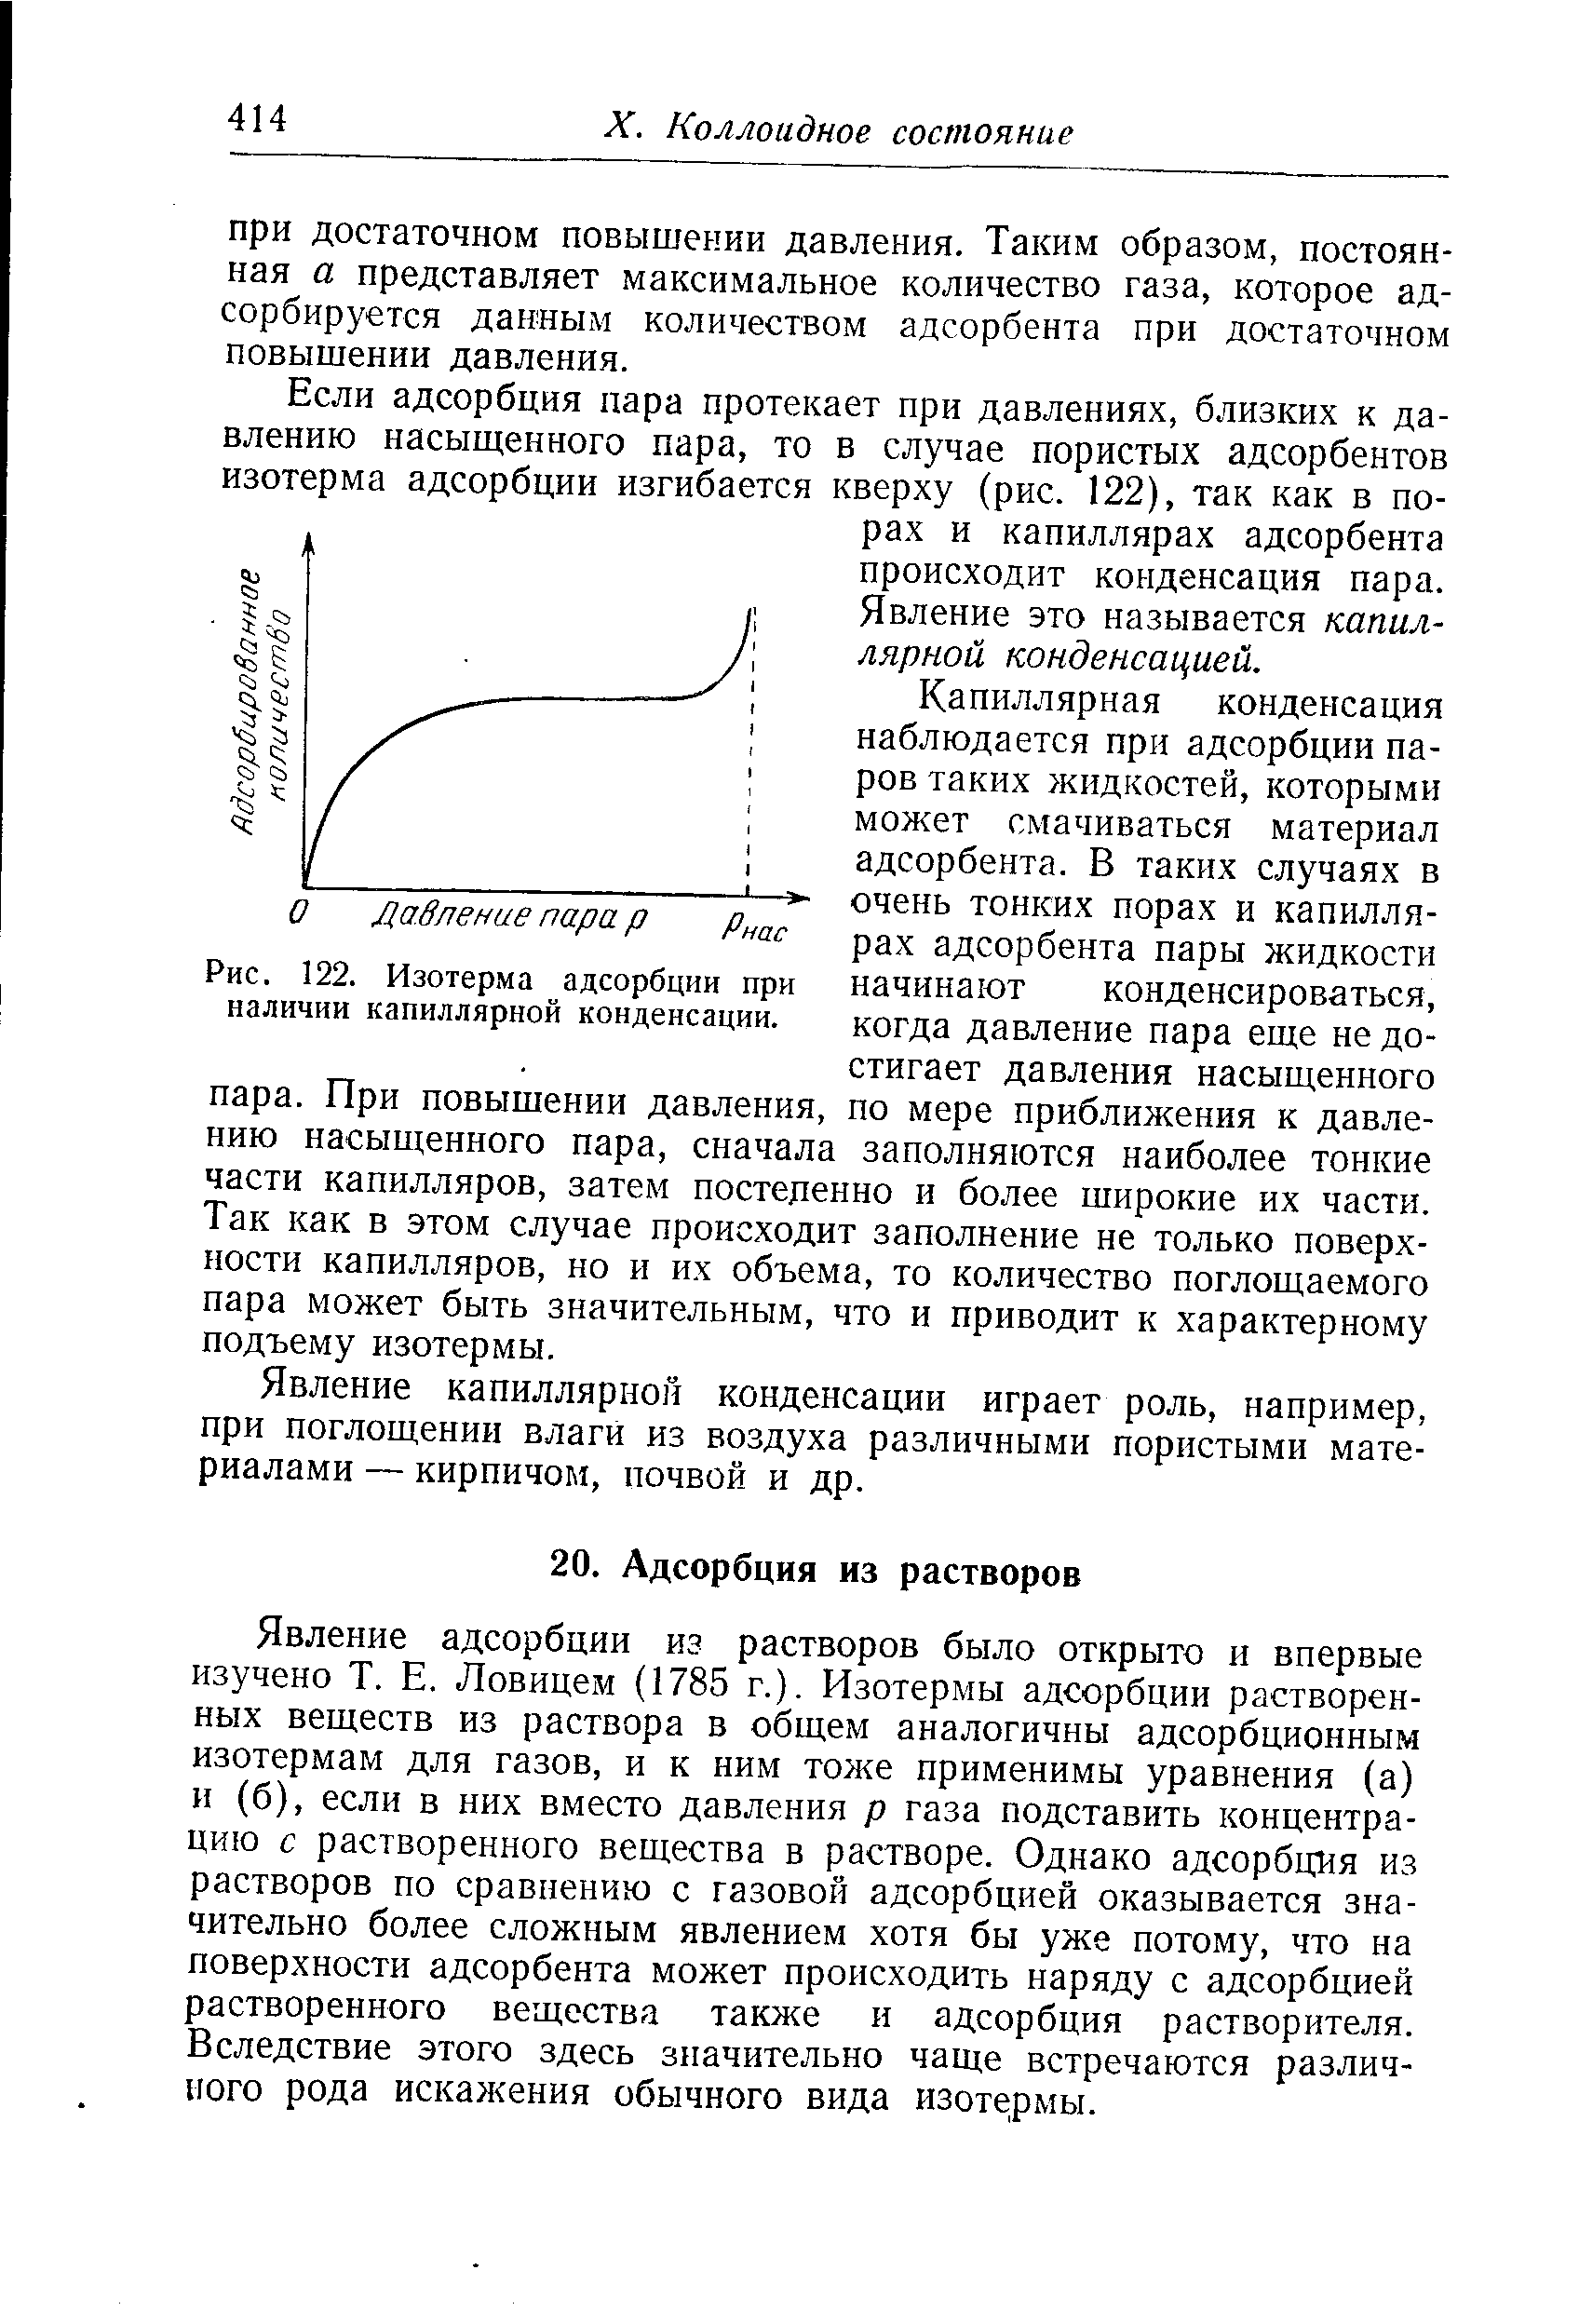 Явление адсорбции из растворов было открыто и впервые изучено Т. Е. Ловицем (1785 г.). Изотермы адсорбции растворенных веществ из раствора в общем аналогичны адсорбционным изотермам для газов, и к ним тоже применимы уравнения (а) и (б), если в них вместо давления р газа подставить концентрацию с растворенного вещества в растворе. Однако адсорбция из растворов по сравнению с газовой адсорбцией оказывается значительно более сложным явлением хотя бы уже потому, что на поверхности адсорбента может происходить наряду с адсорбцией растворенного вещества также и адсорбция растворителя. Вследствие этого здесь значительно чаще встречаются различного рода искажения обычного вида изотермы.